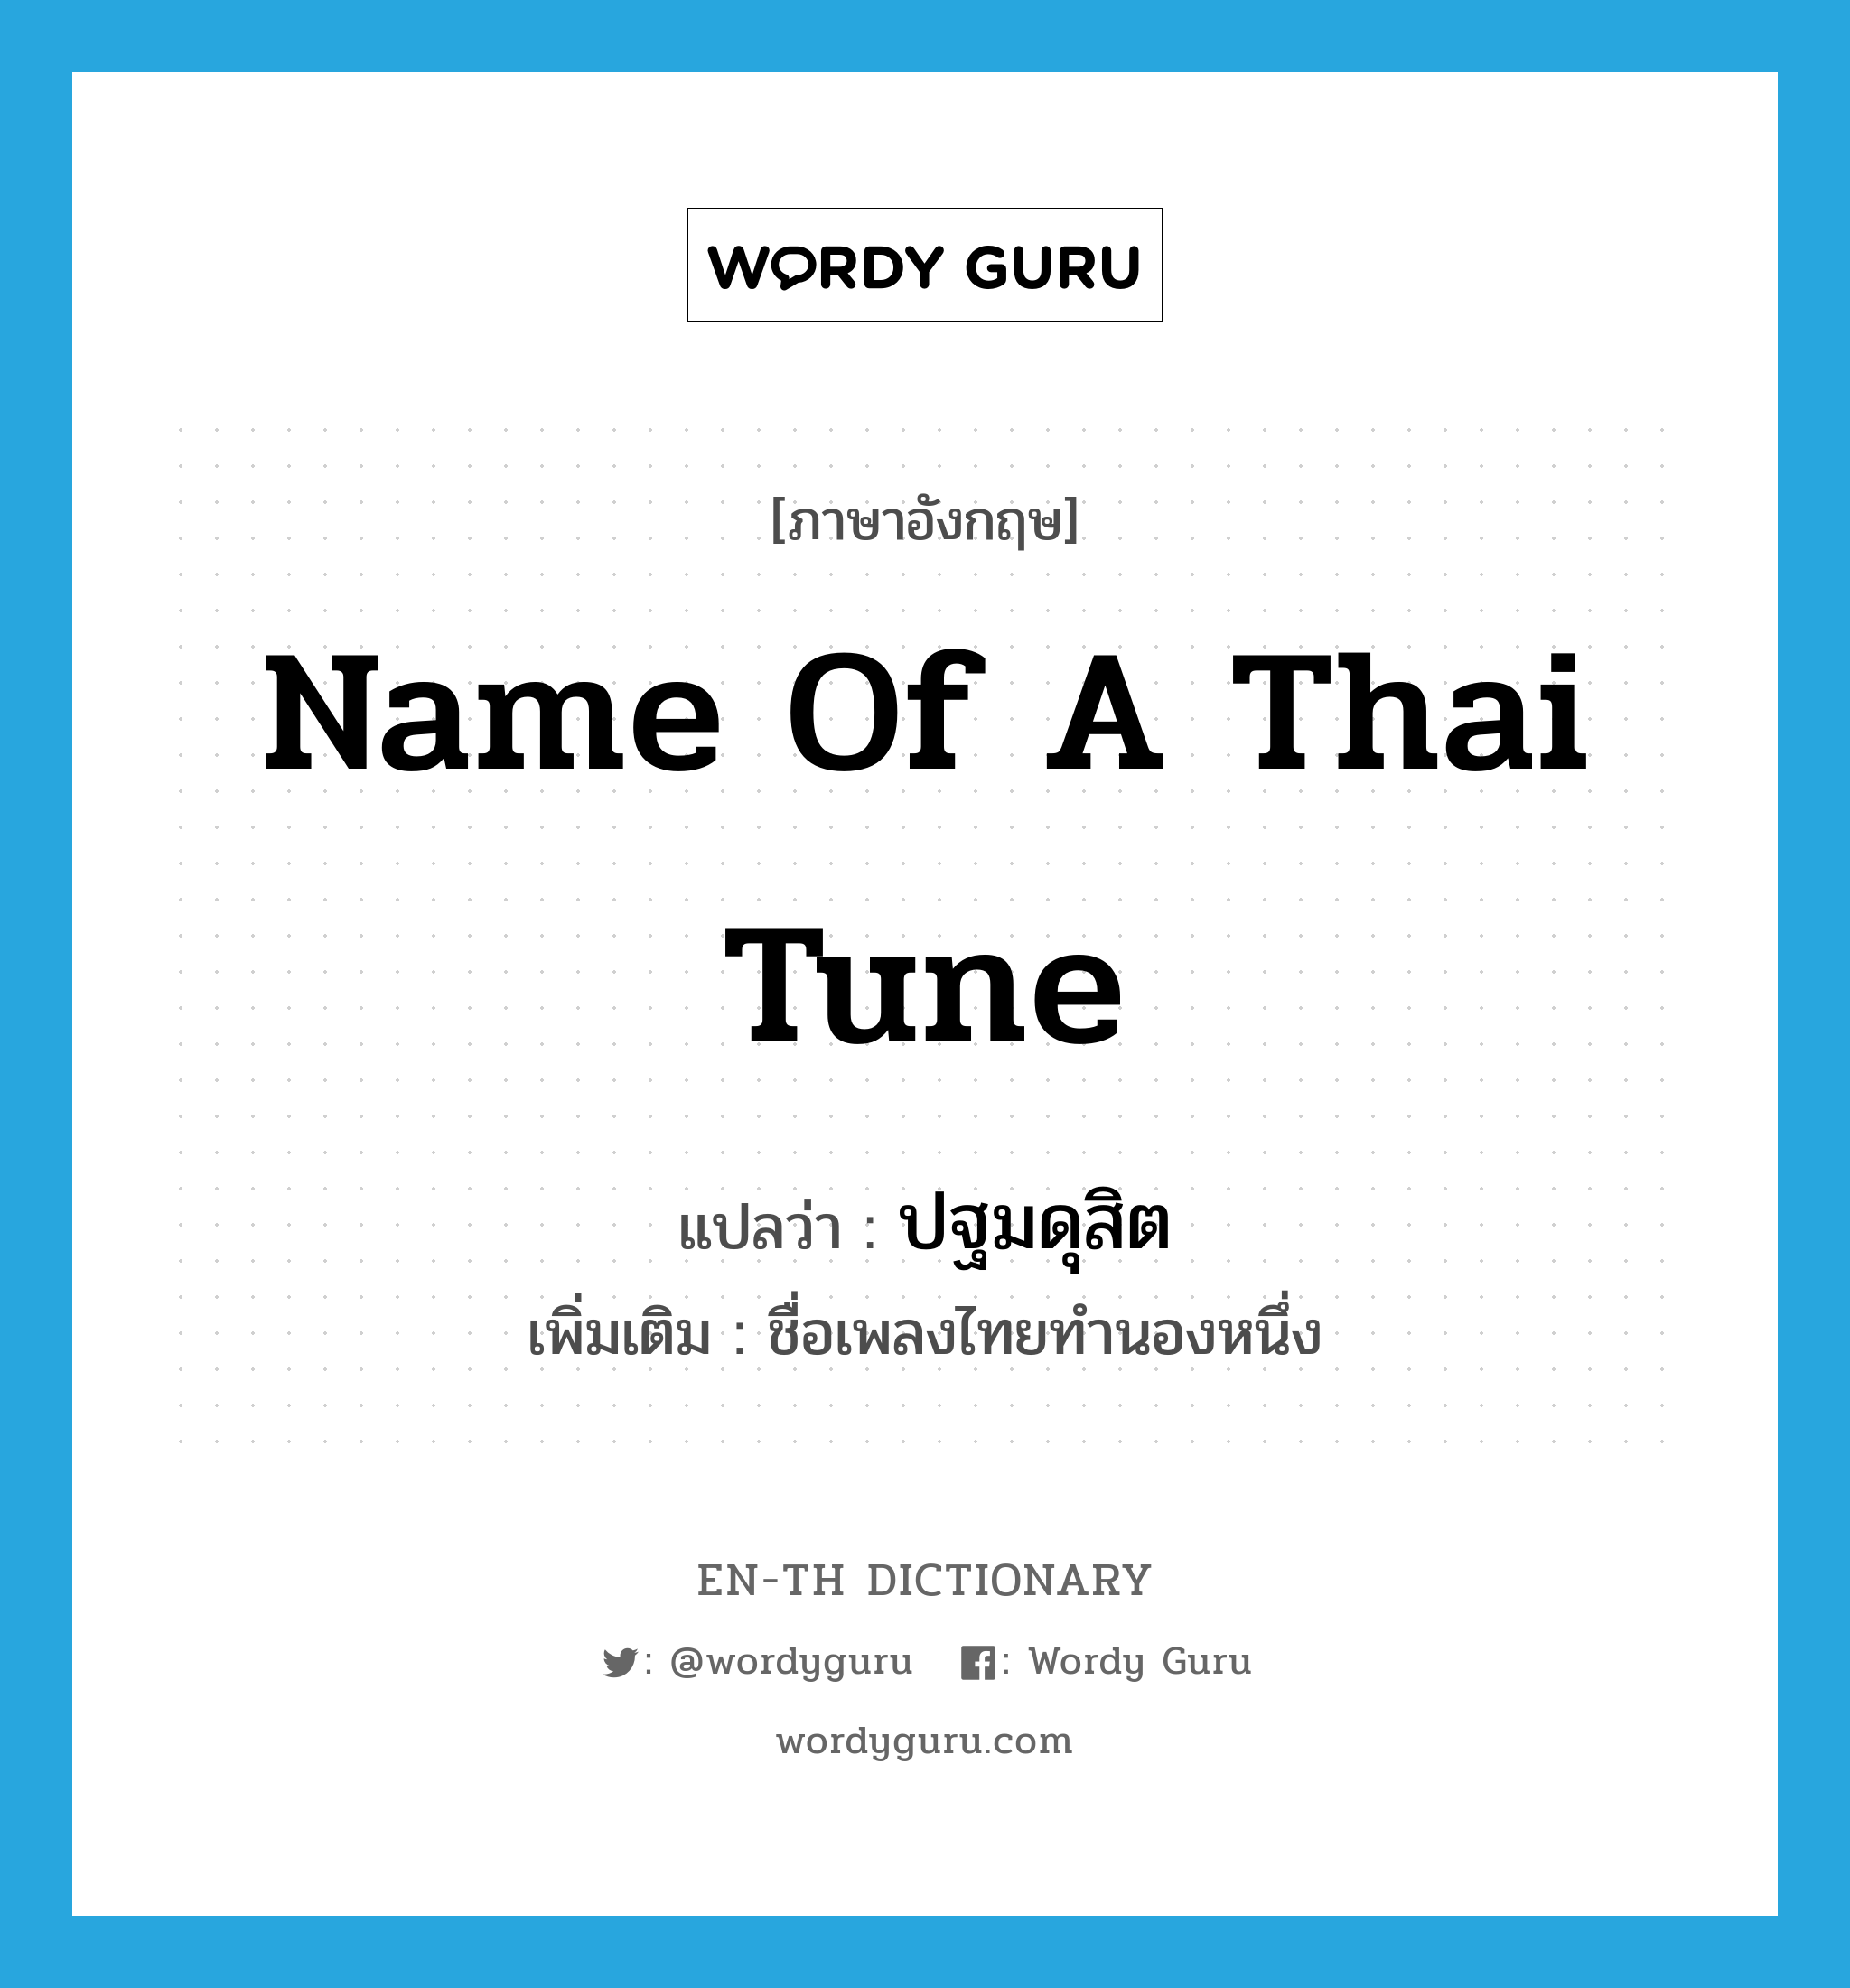 ปฐมดุสิต ภาษาอังกฤษ?, คำศัพท์ภาษาอังกฤษ ปฐมดุสิต แปลว่า name of a Thai tune ประเภท N เพิ่มเติม ชื่อเพลงไทยทำนองหนึ่ง หมวด N